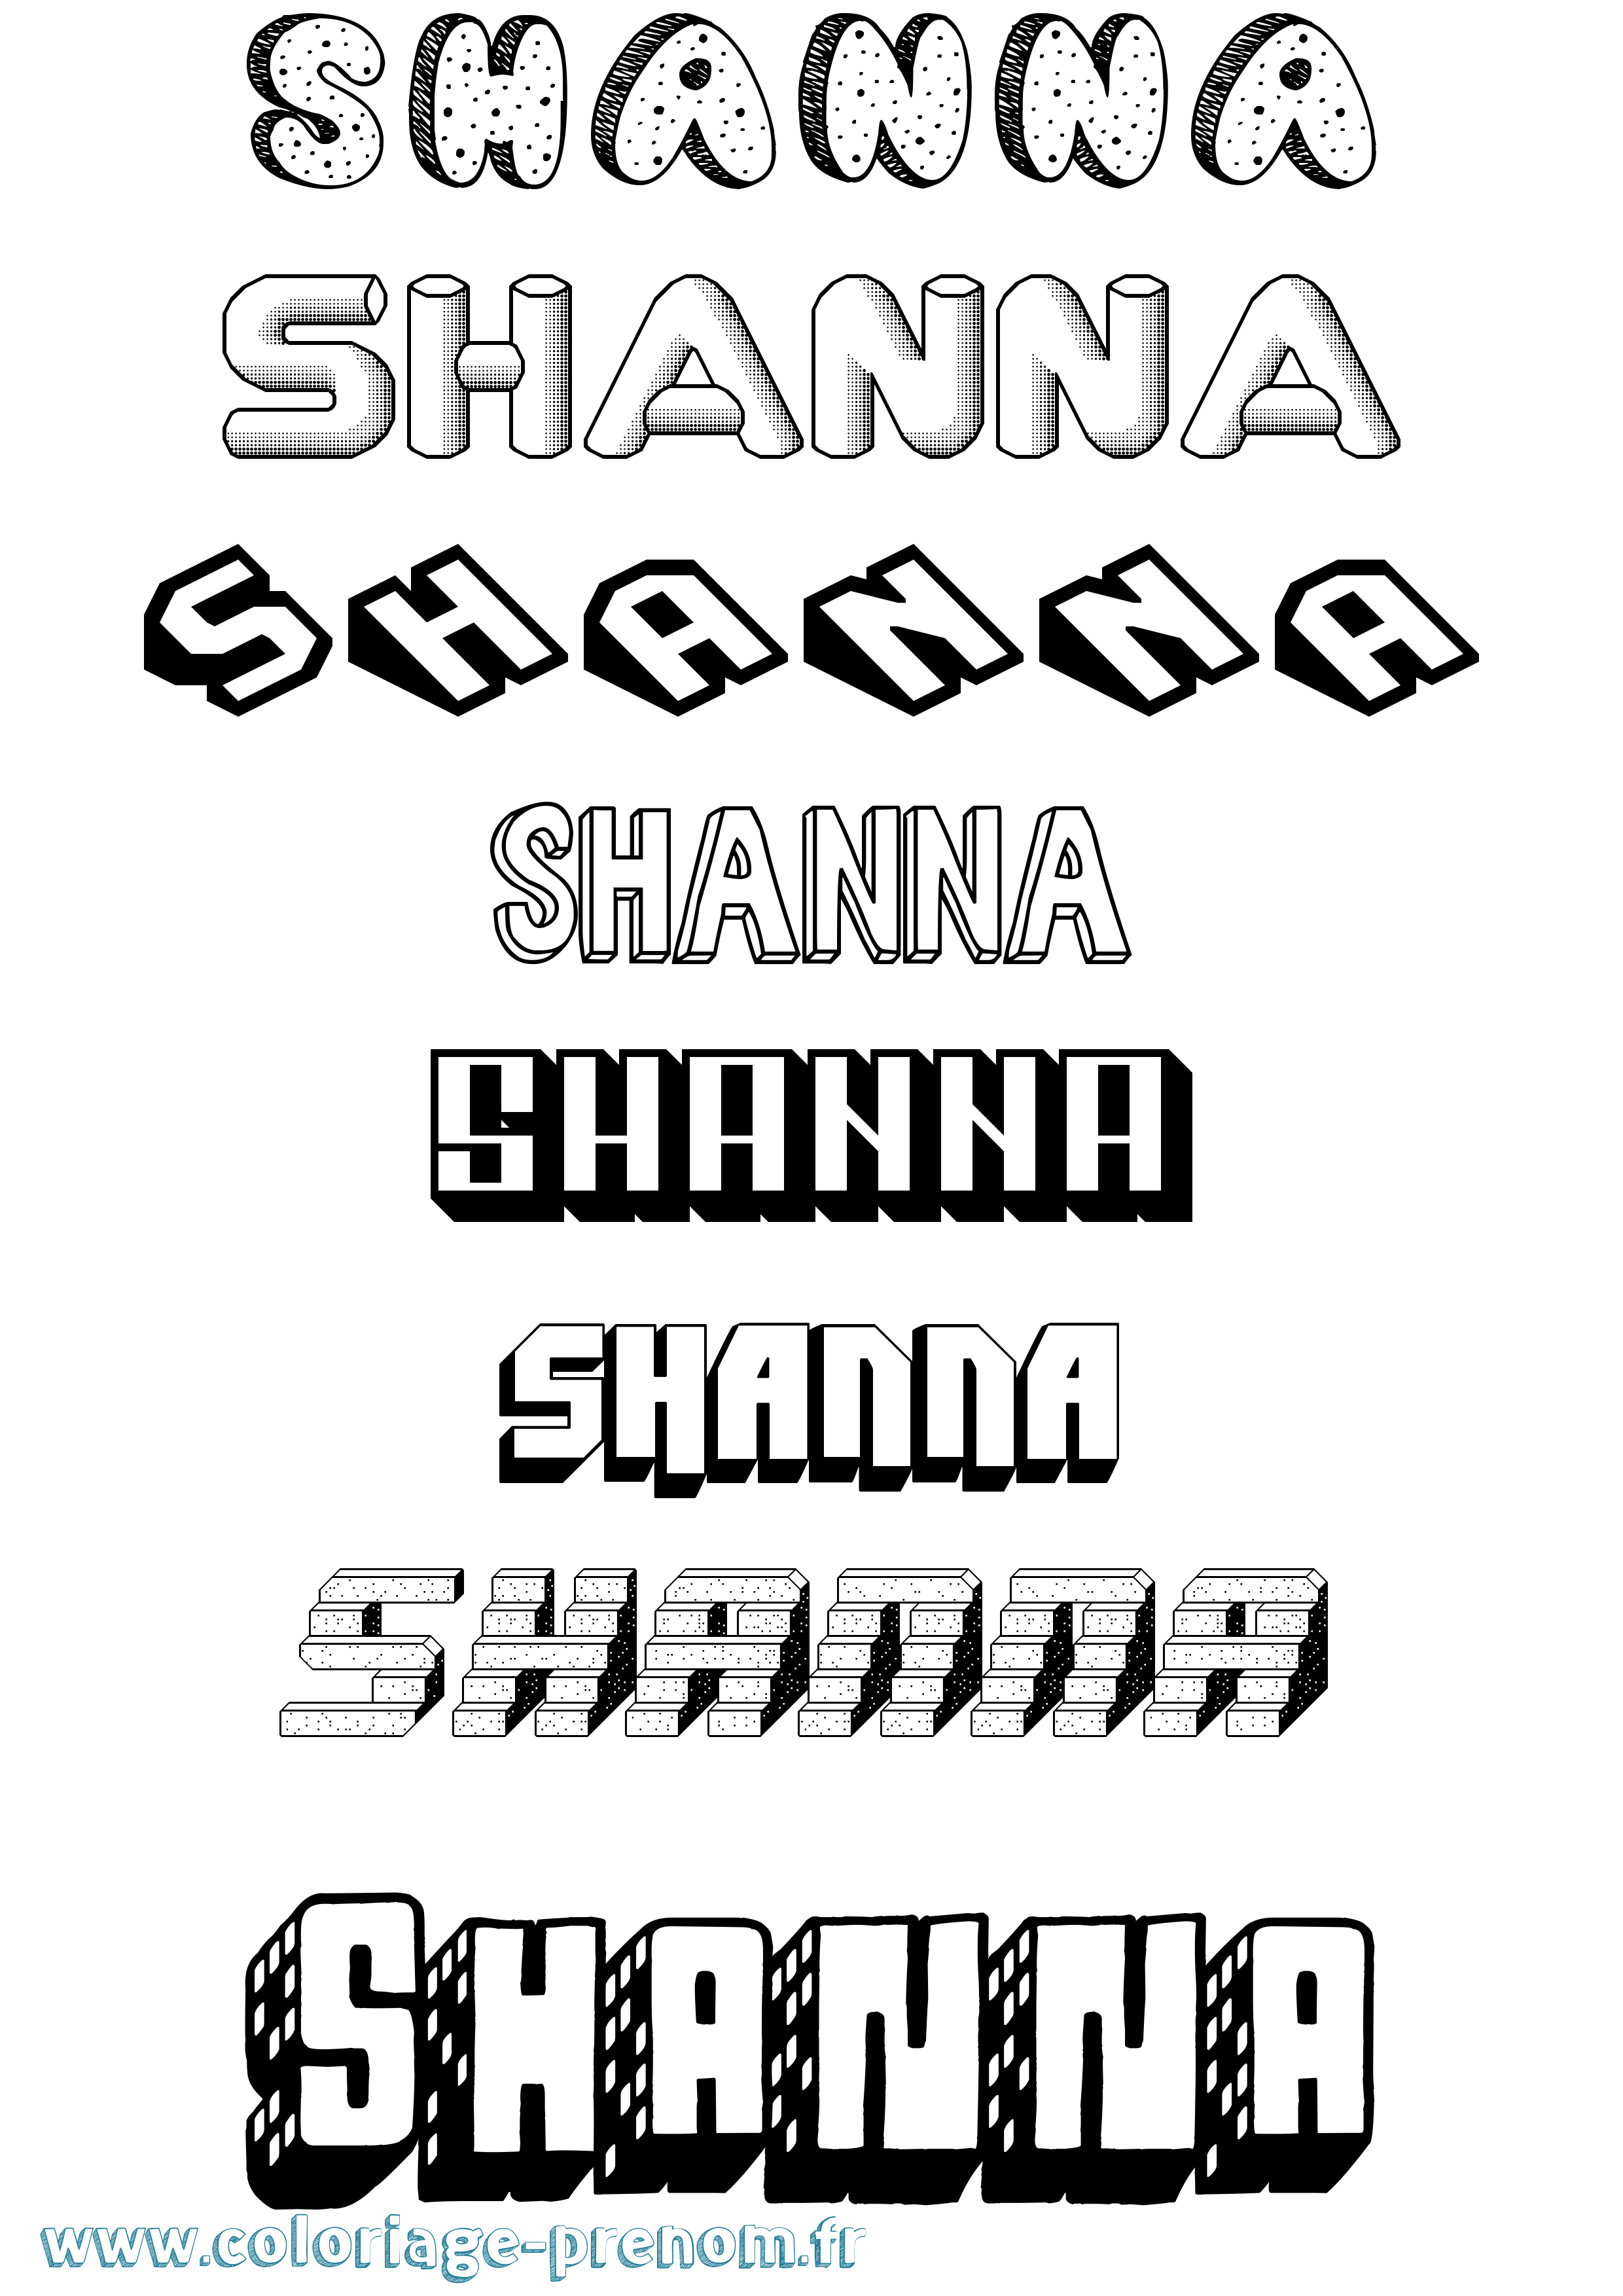 Coloriage prénom Shanna